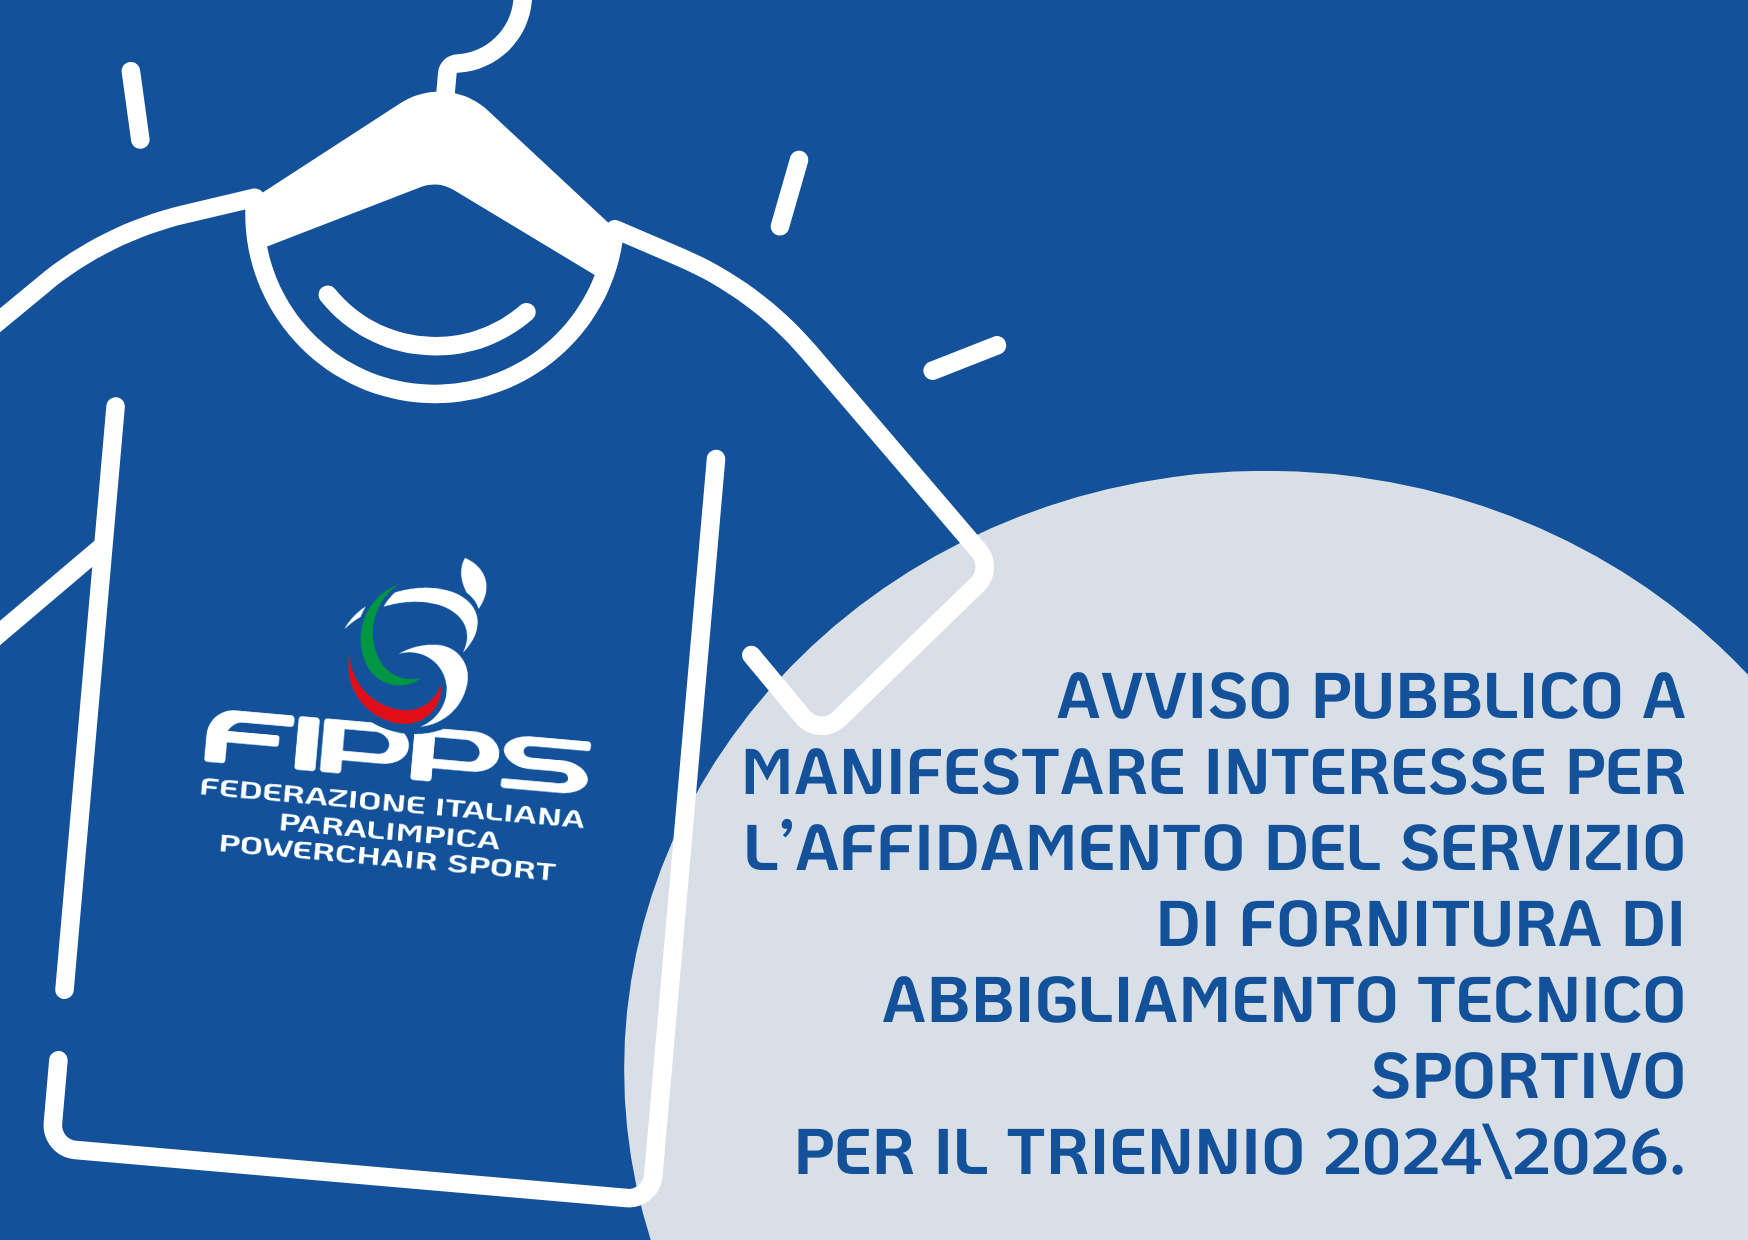 Manifestazione di Interesse per l’affidamento del servizio di fornitura di abbigliamento tecnico sportivo per il triennio 2024/2026